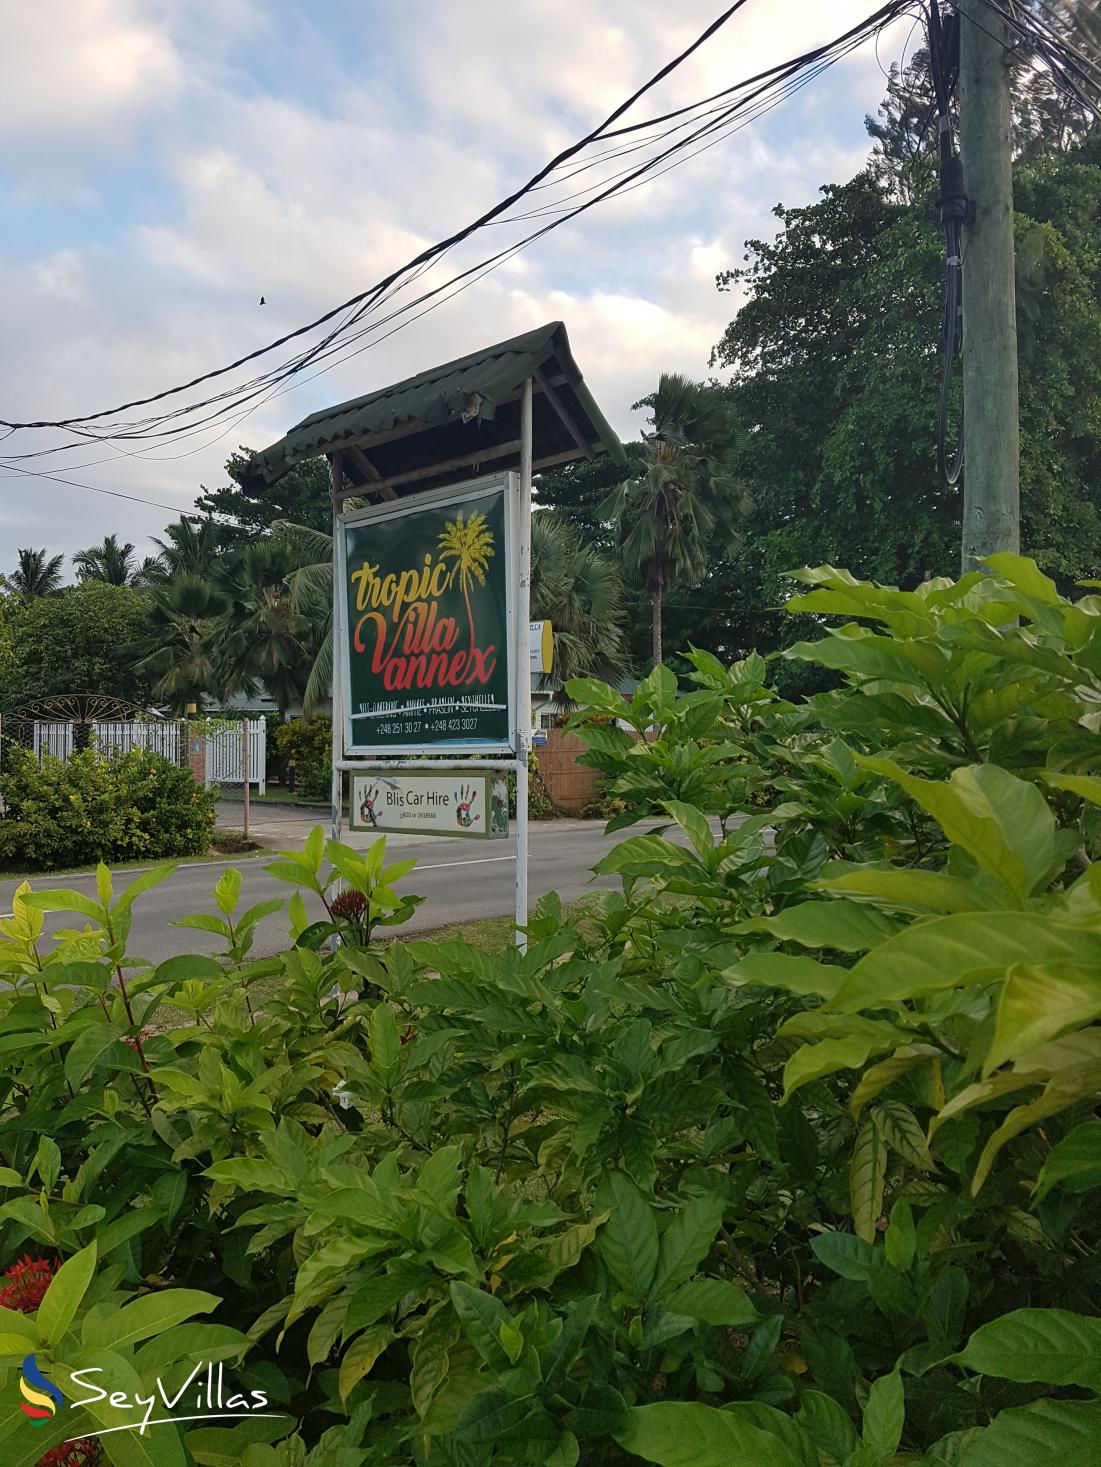 Foto 8: Tropic Villa Annex - Aussenbereich - Praslin (Seychellen)